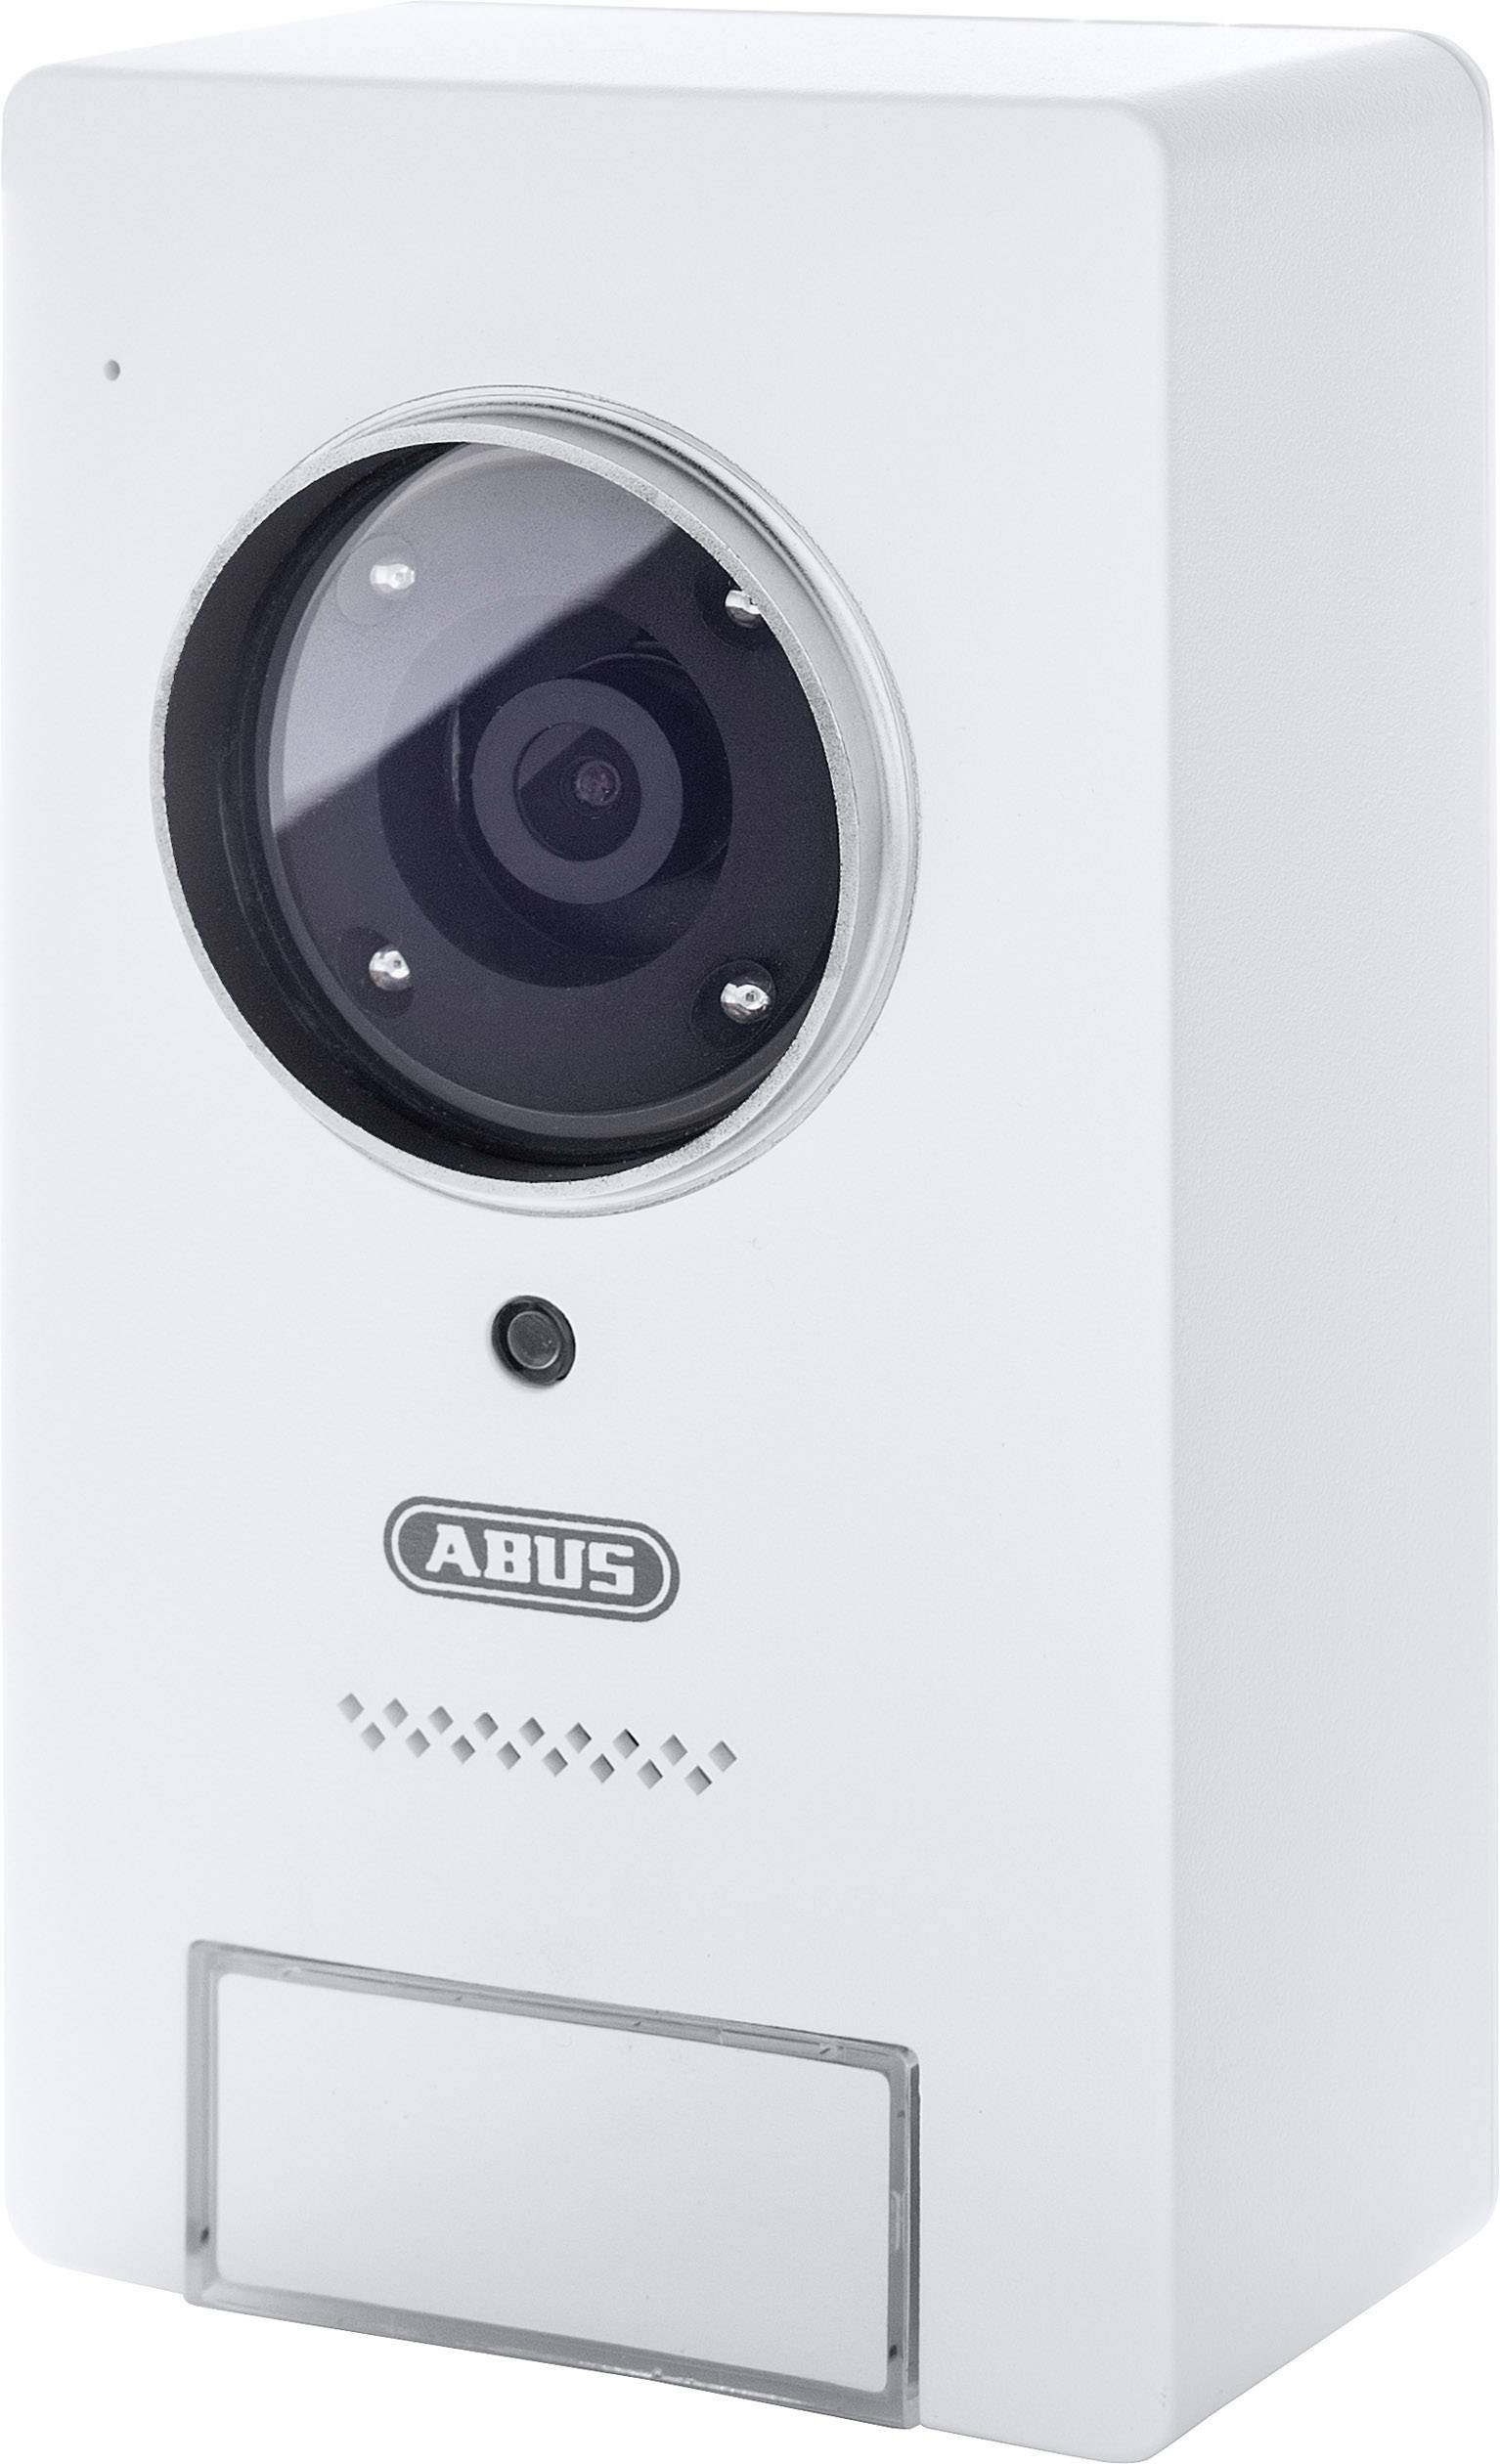 ABUS Smart Security World WiFi Video Door Intercom